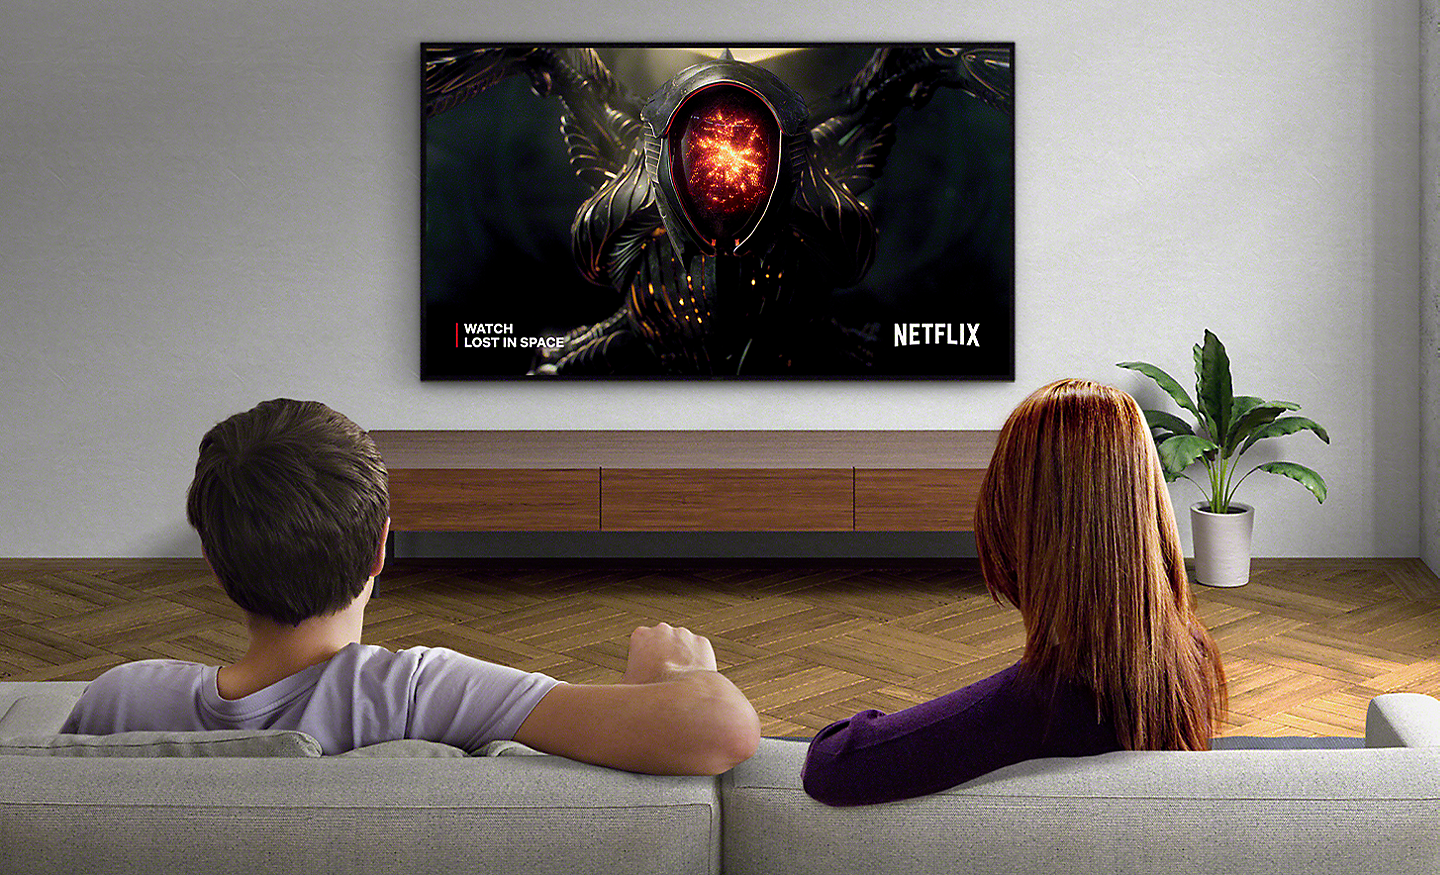 圖片中為一對情侶在客廳用壁掛式 BRAVIA TV 觀看 Netflix